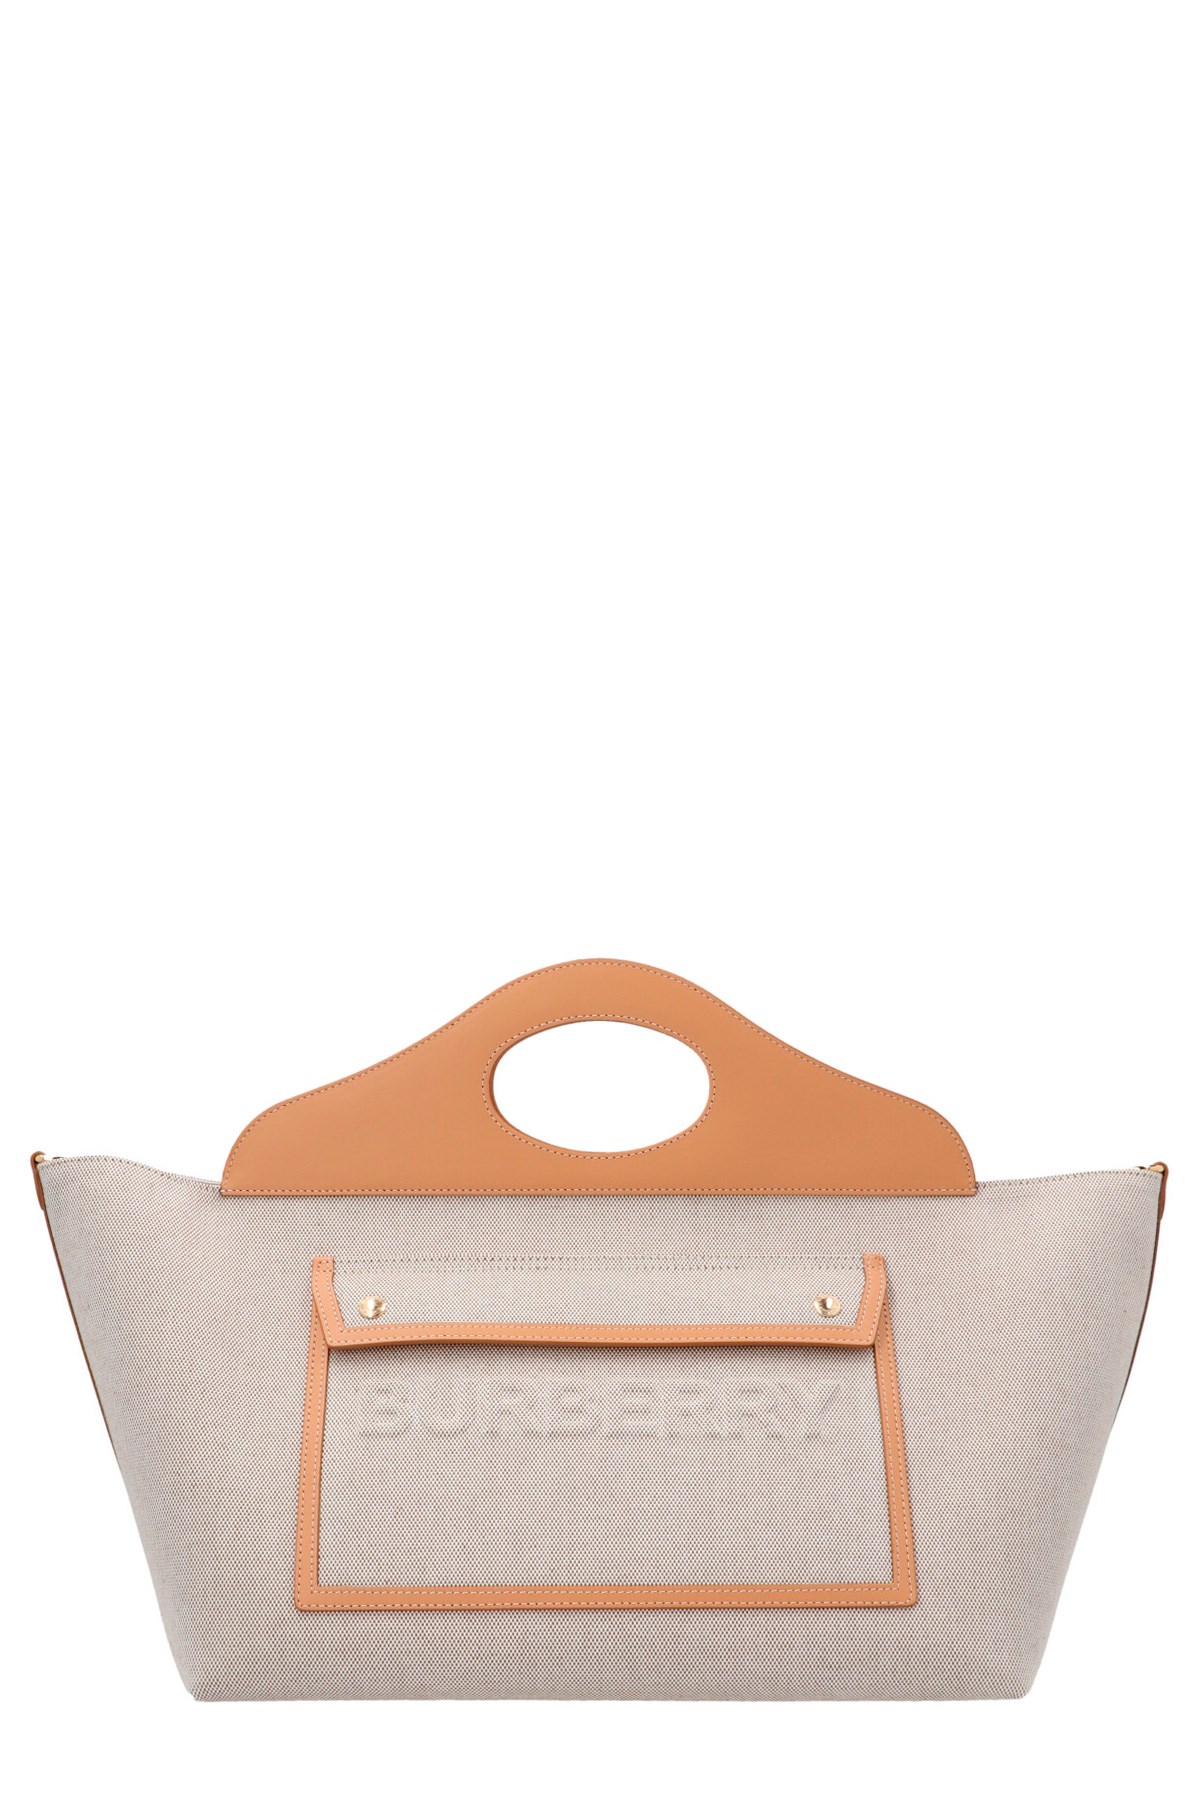 BURBERRY 'Pocket’ Shopping Bag